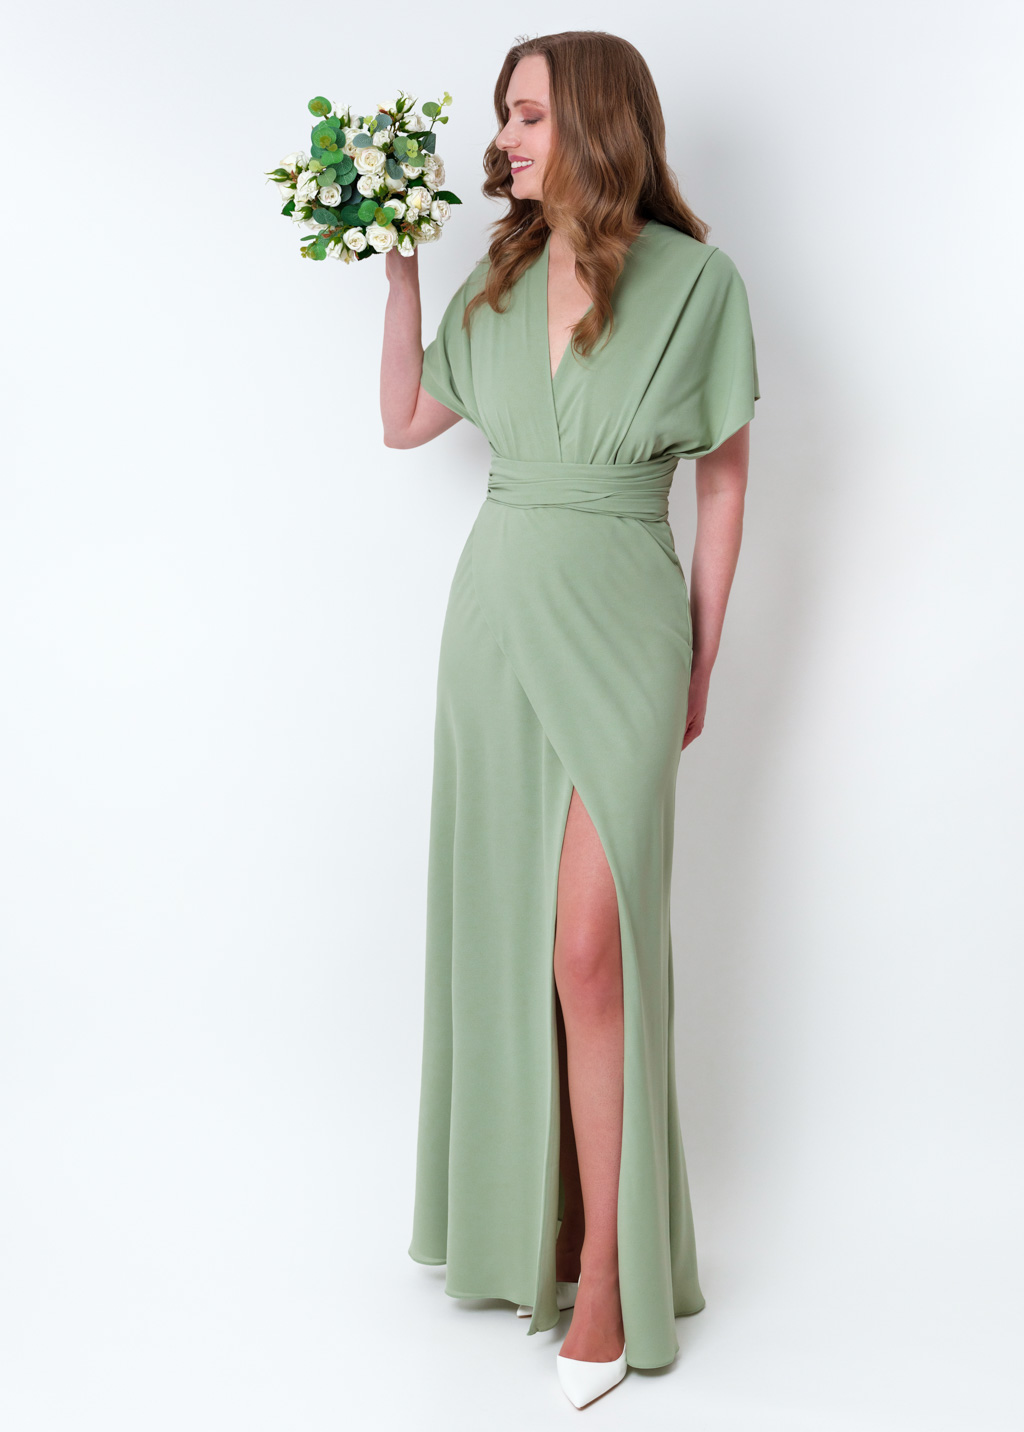 Sage green chiffon infinity slit dress